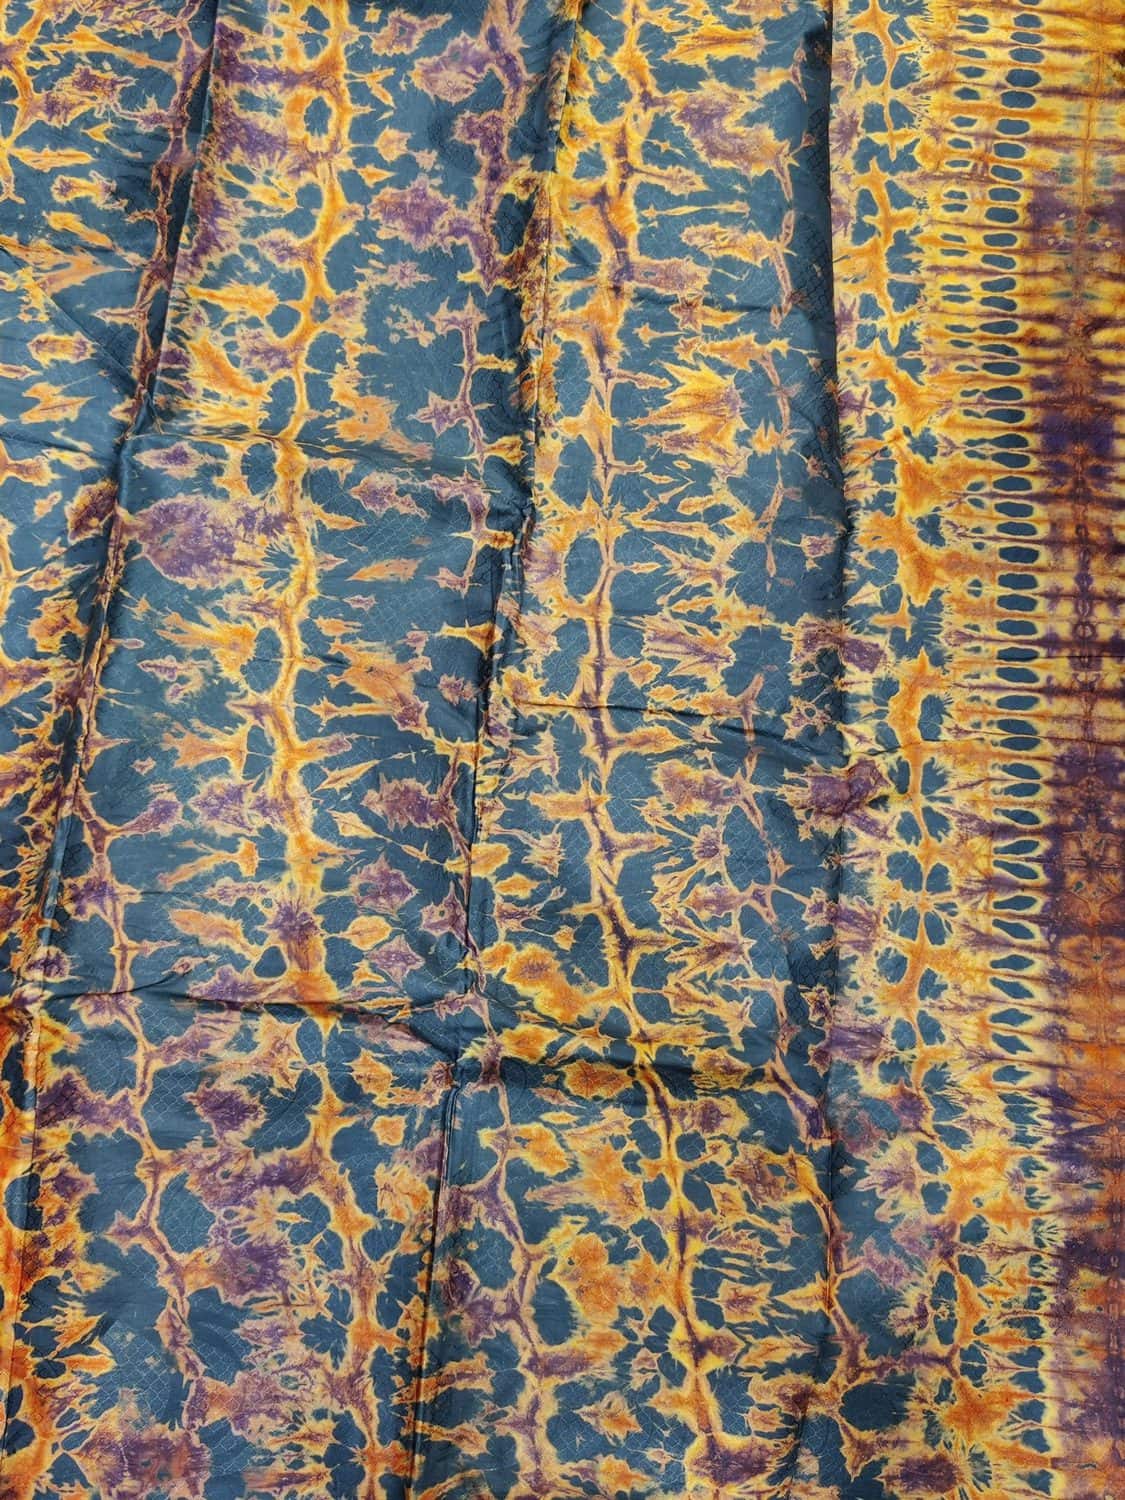 La teinture artisanale de nos tissus africains - Africouleur